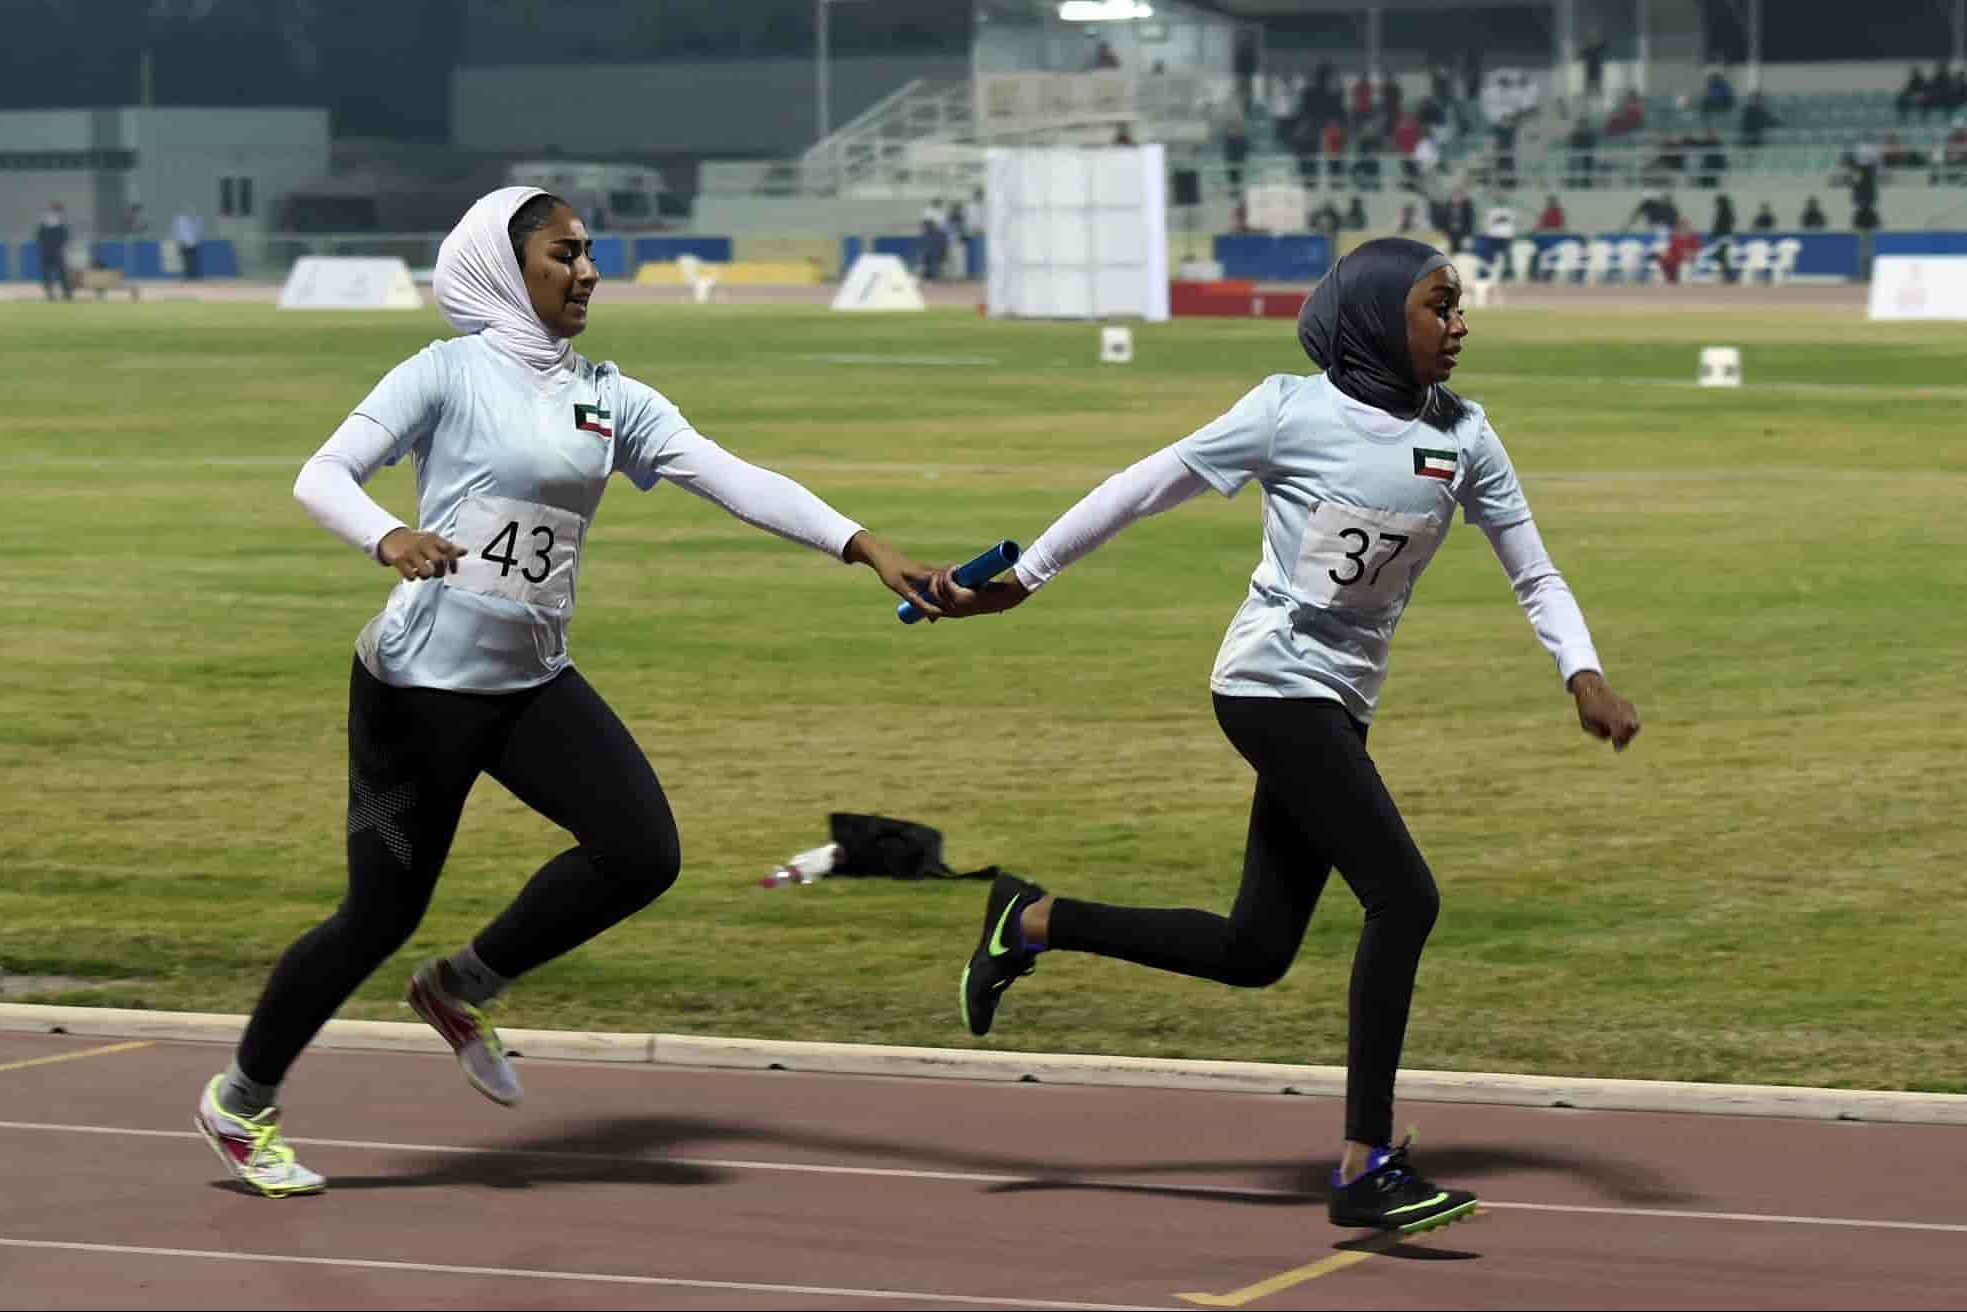  ملابس رياضية ماركات للمحجاب المسلمات 